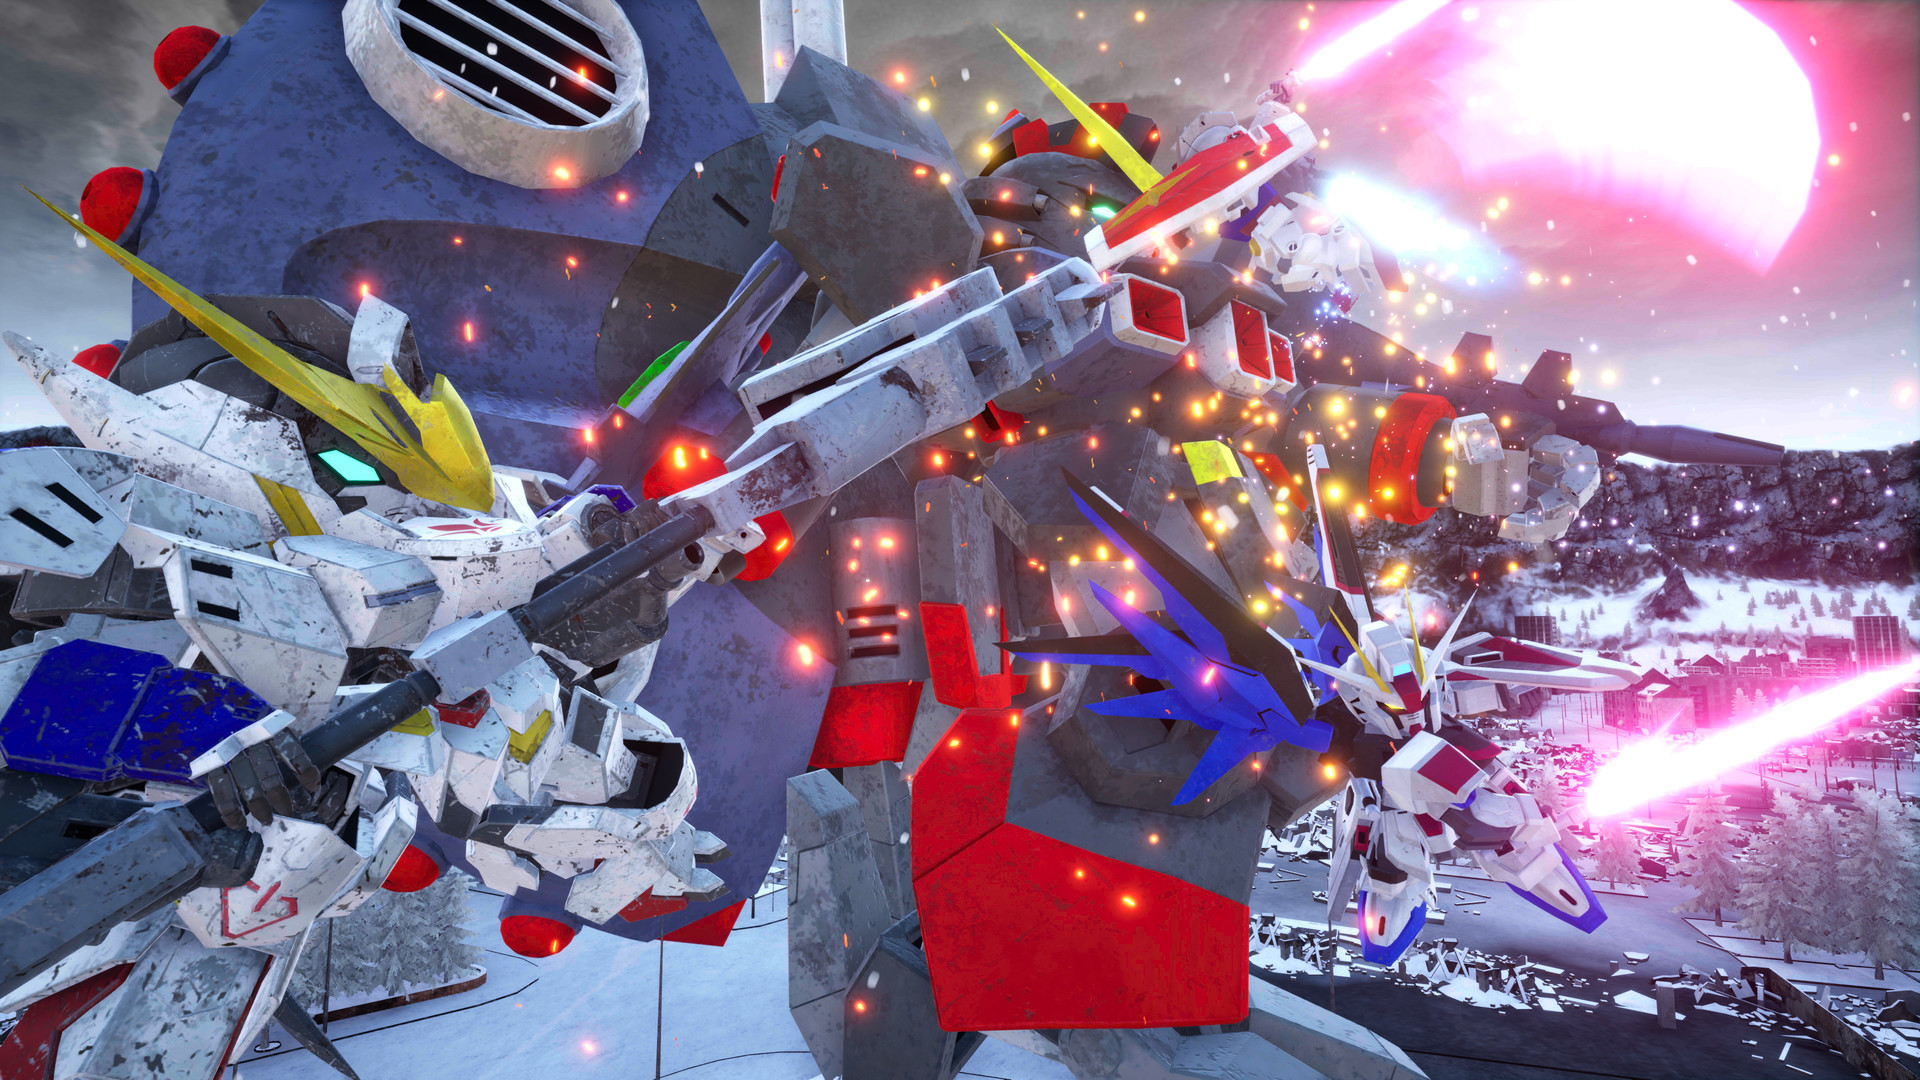 SD Gundam Battle Alliance Deluxe Edition EU V2 Steam Altergift